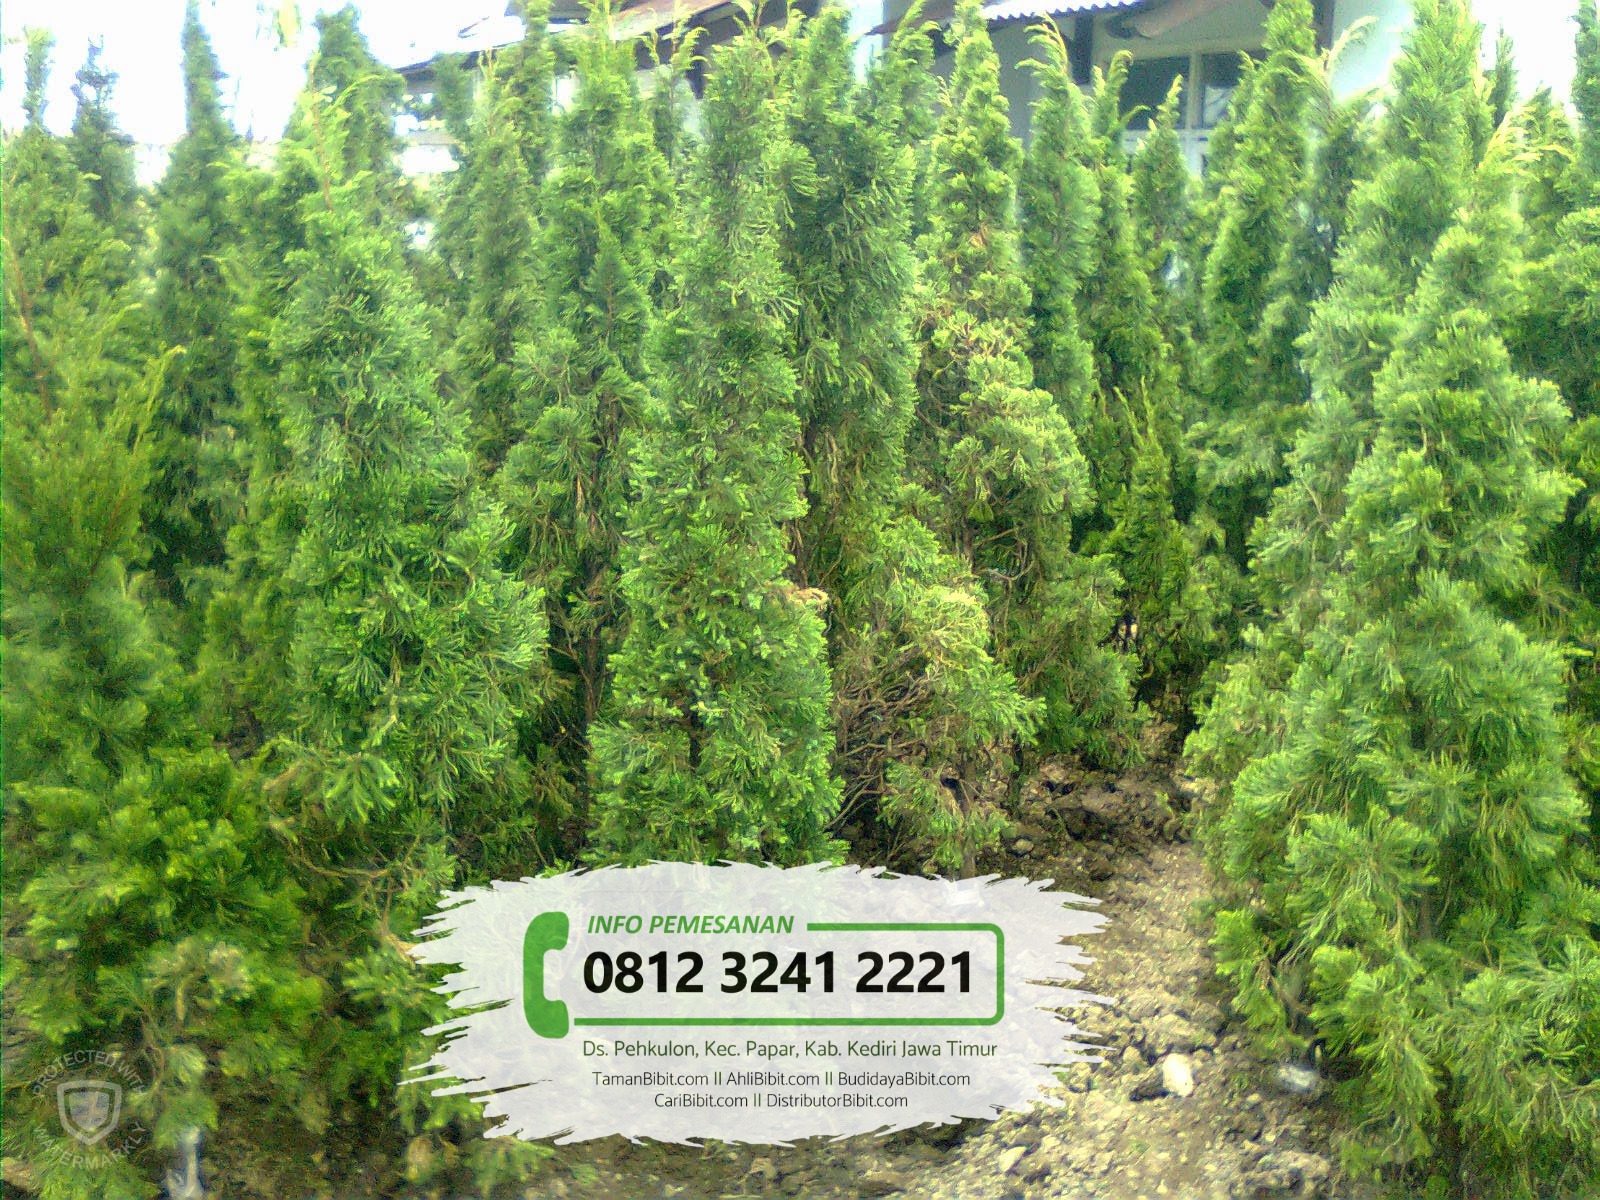 Jual Benih Biji Pohon Cemara  Papua TamanBibit com